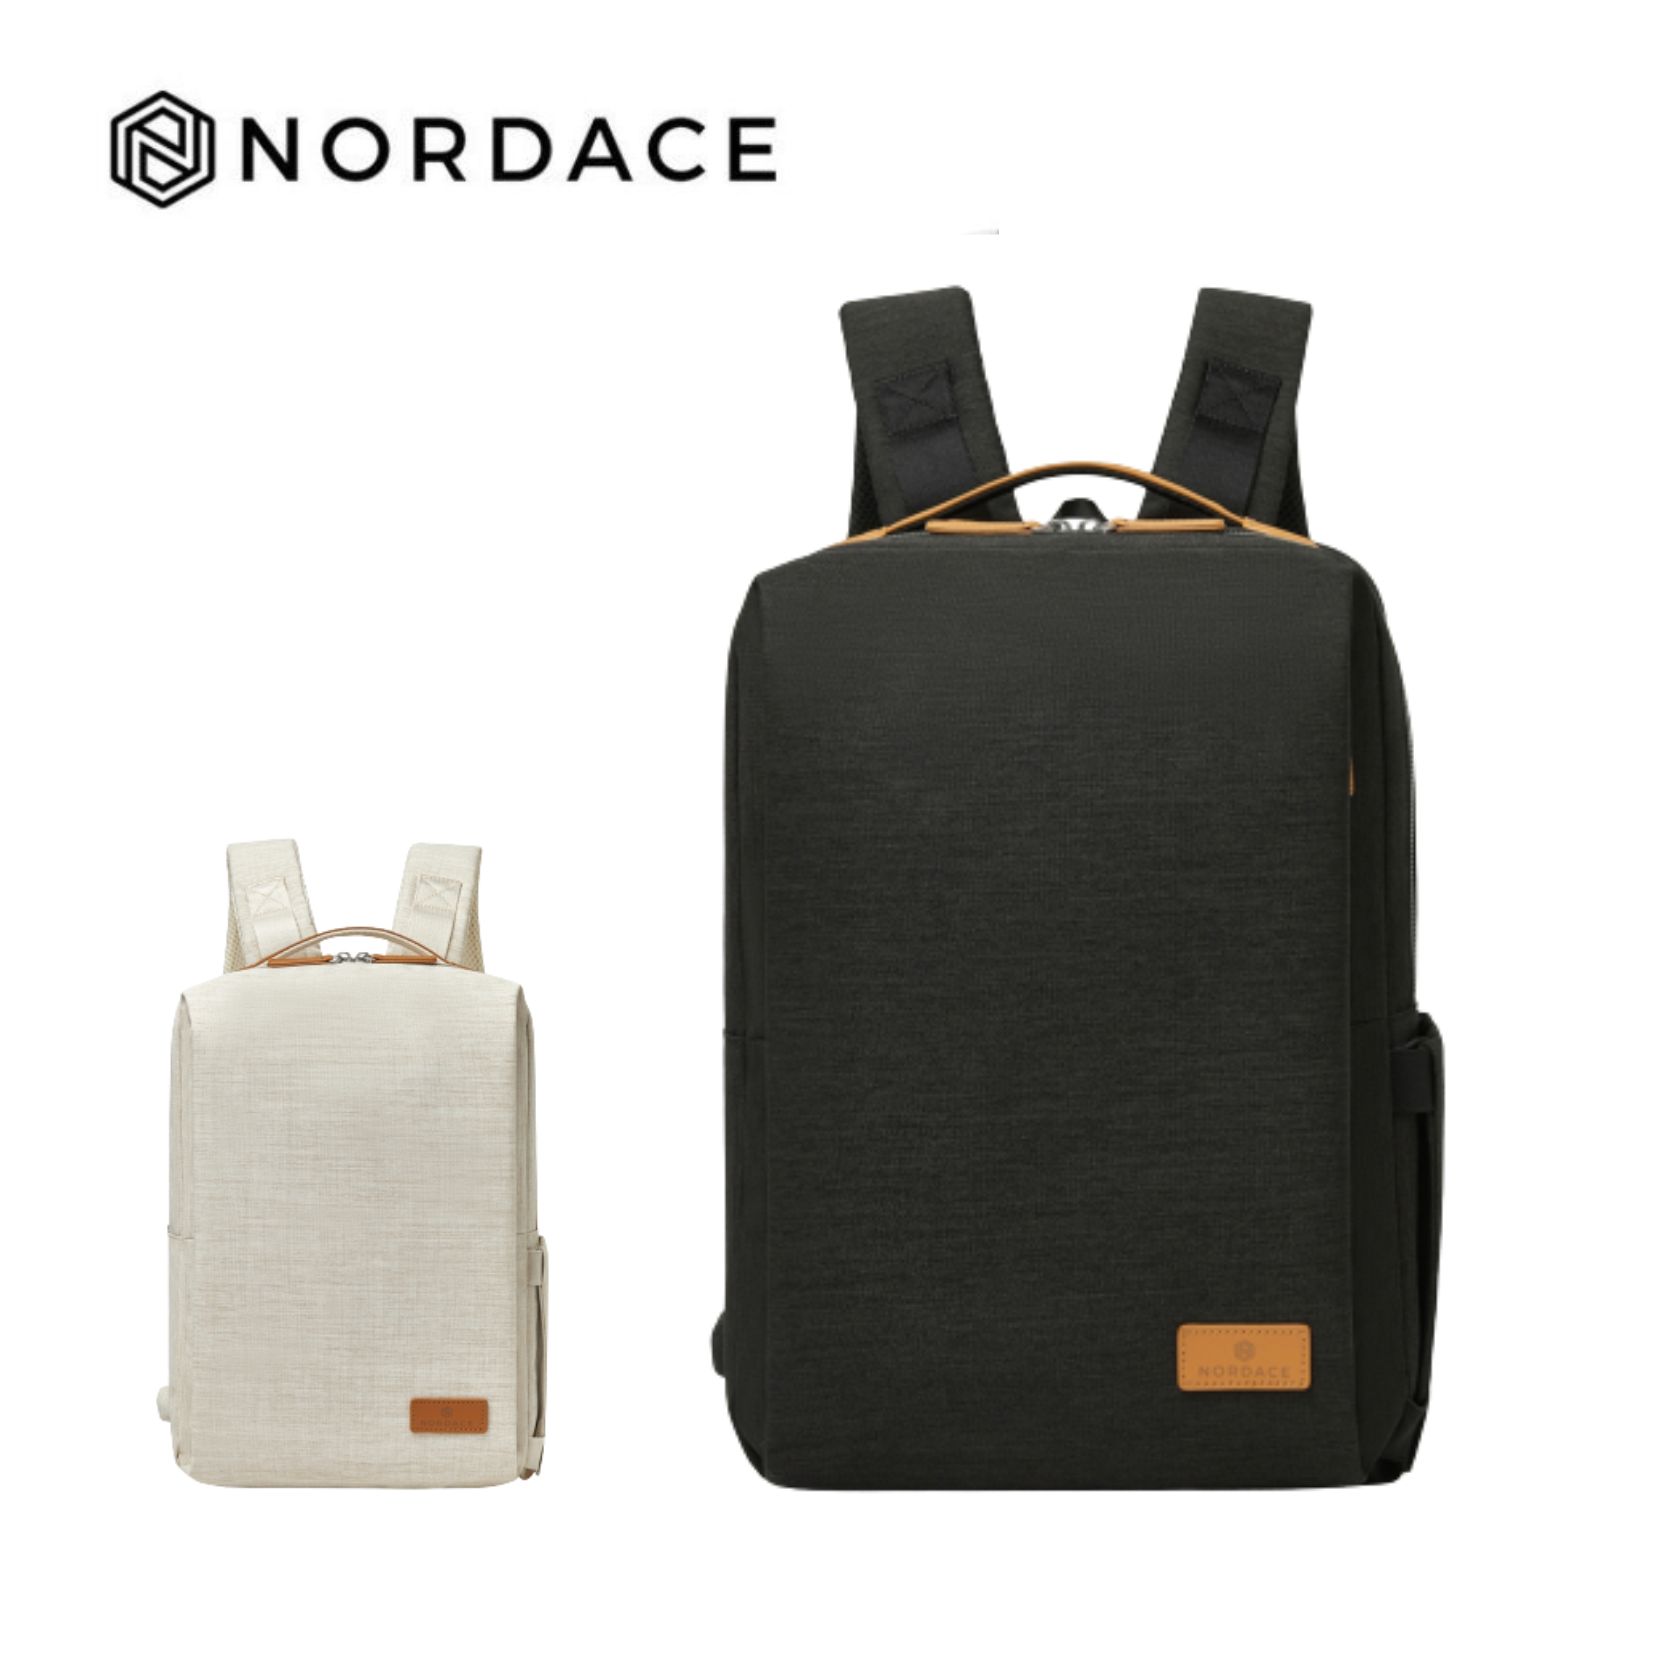 Nordace Siena Pro 13 智能背包 後背包 雙肩包男女百搭通勤背包 側背包 男包 女包 防潑水-兩色可選-黑色